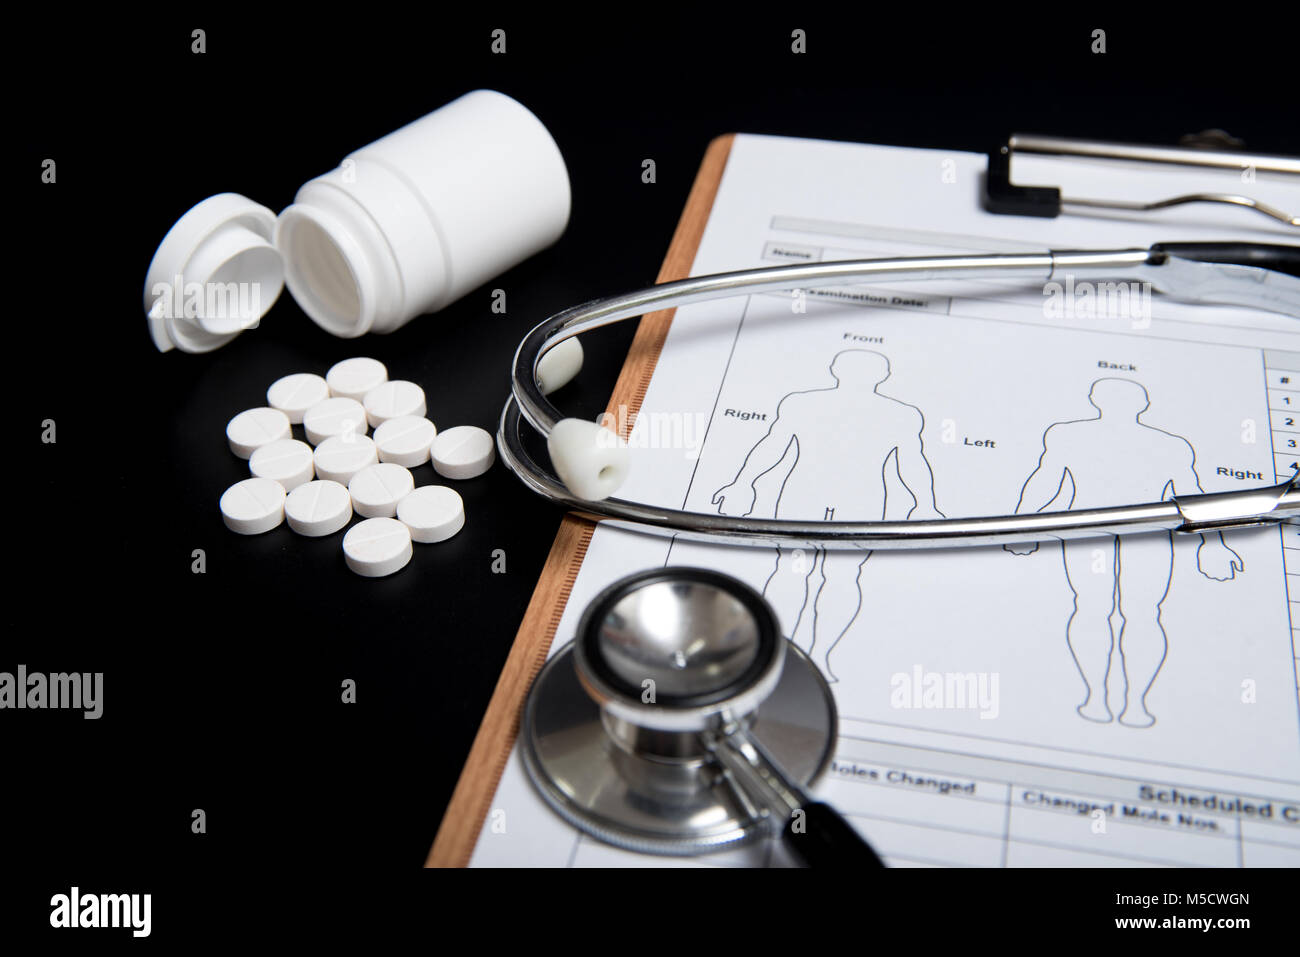 Weiße Pillen und eine weiße Flasche, zusammen mit einem Stethoskop und ein medizinisches Diagramm, werden über einen schwarzen Hintergrund. Stockfoto